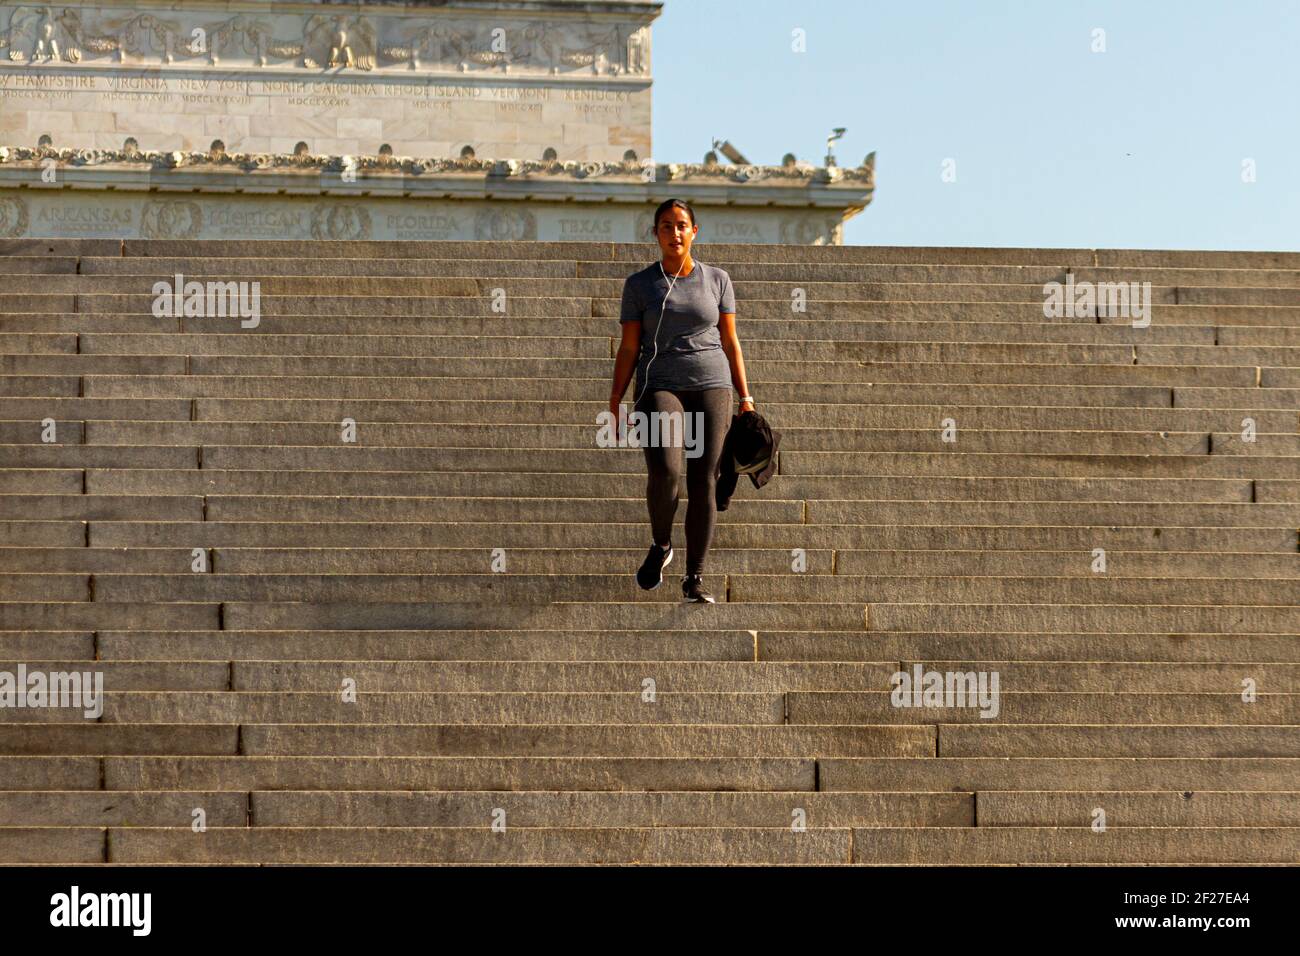 Washington DC, USA 11-06-2020: Ein junges hispanic-Mädchen trainiert auf der steilen Treppe nahe dem Lincoln Memorial in DC. Sie trägt Strumpfhosen, Sporttop und Stockfoto